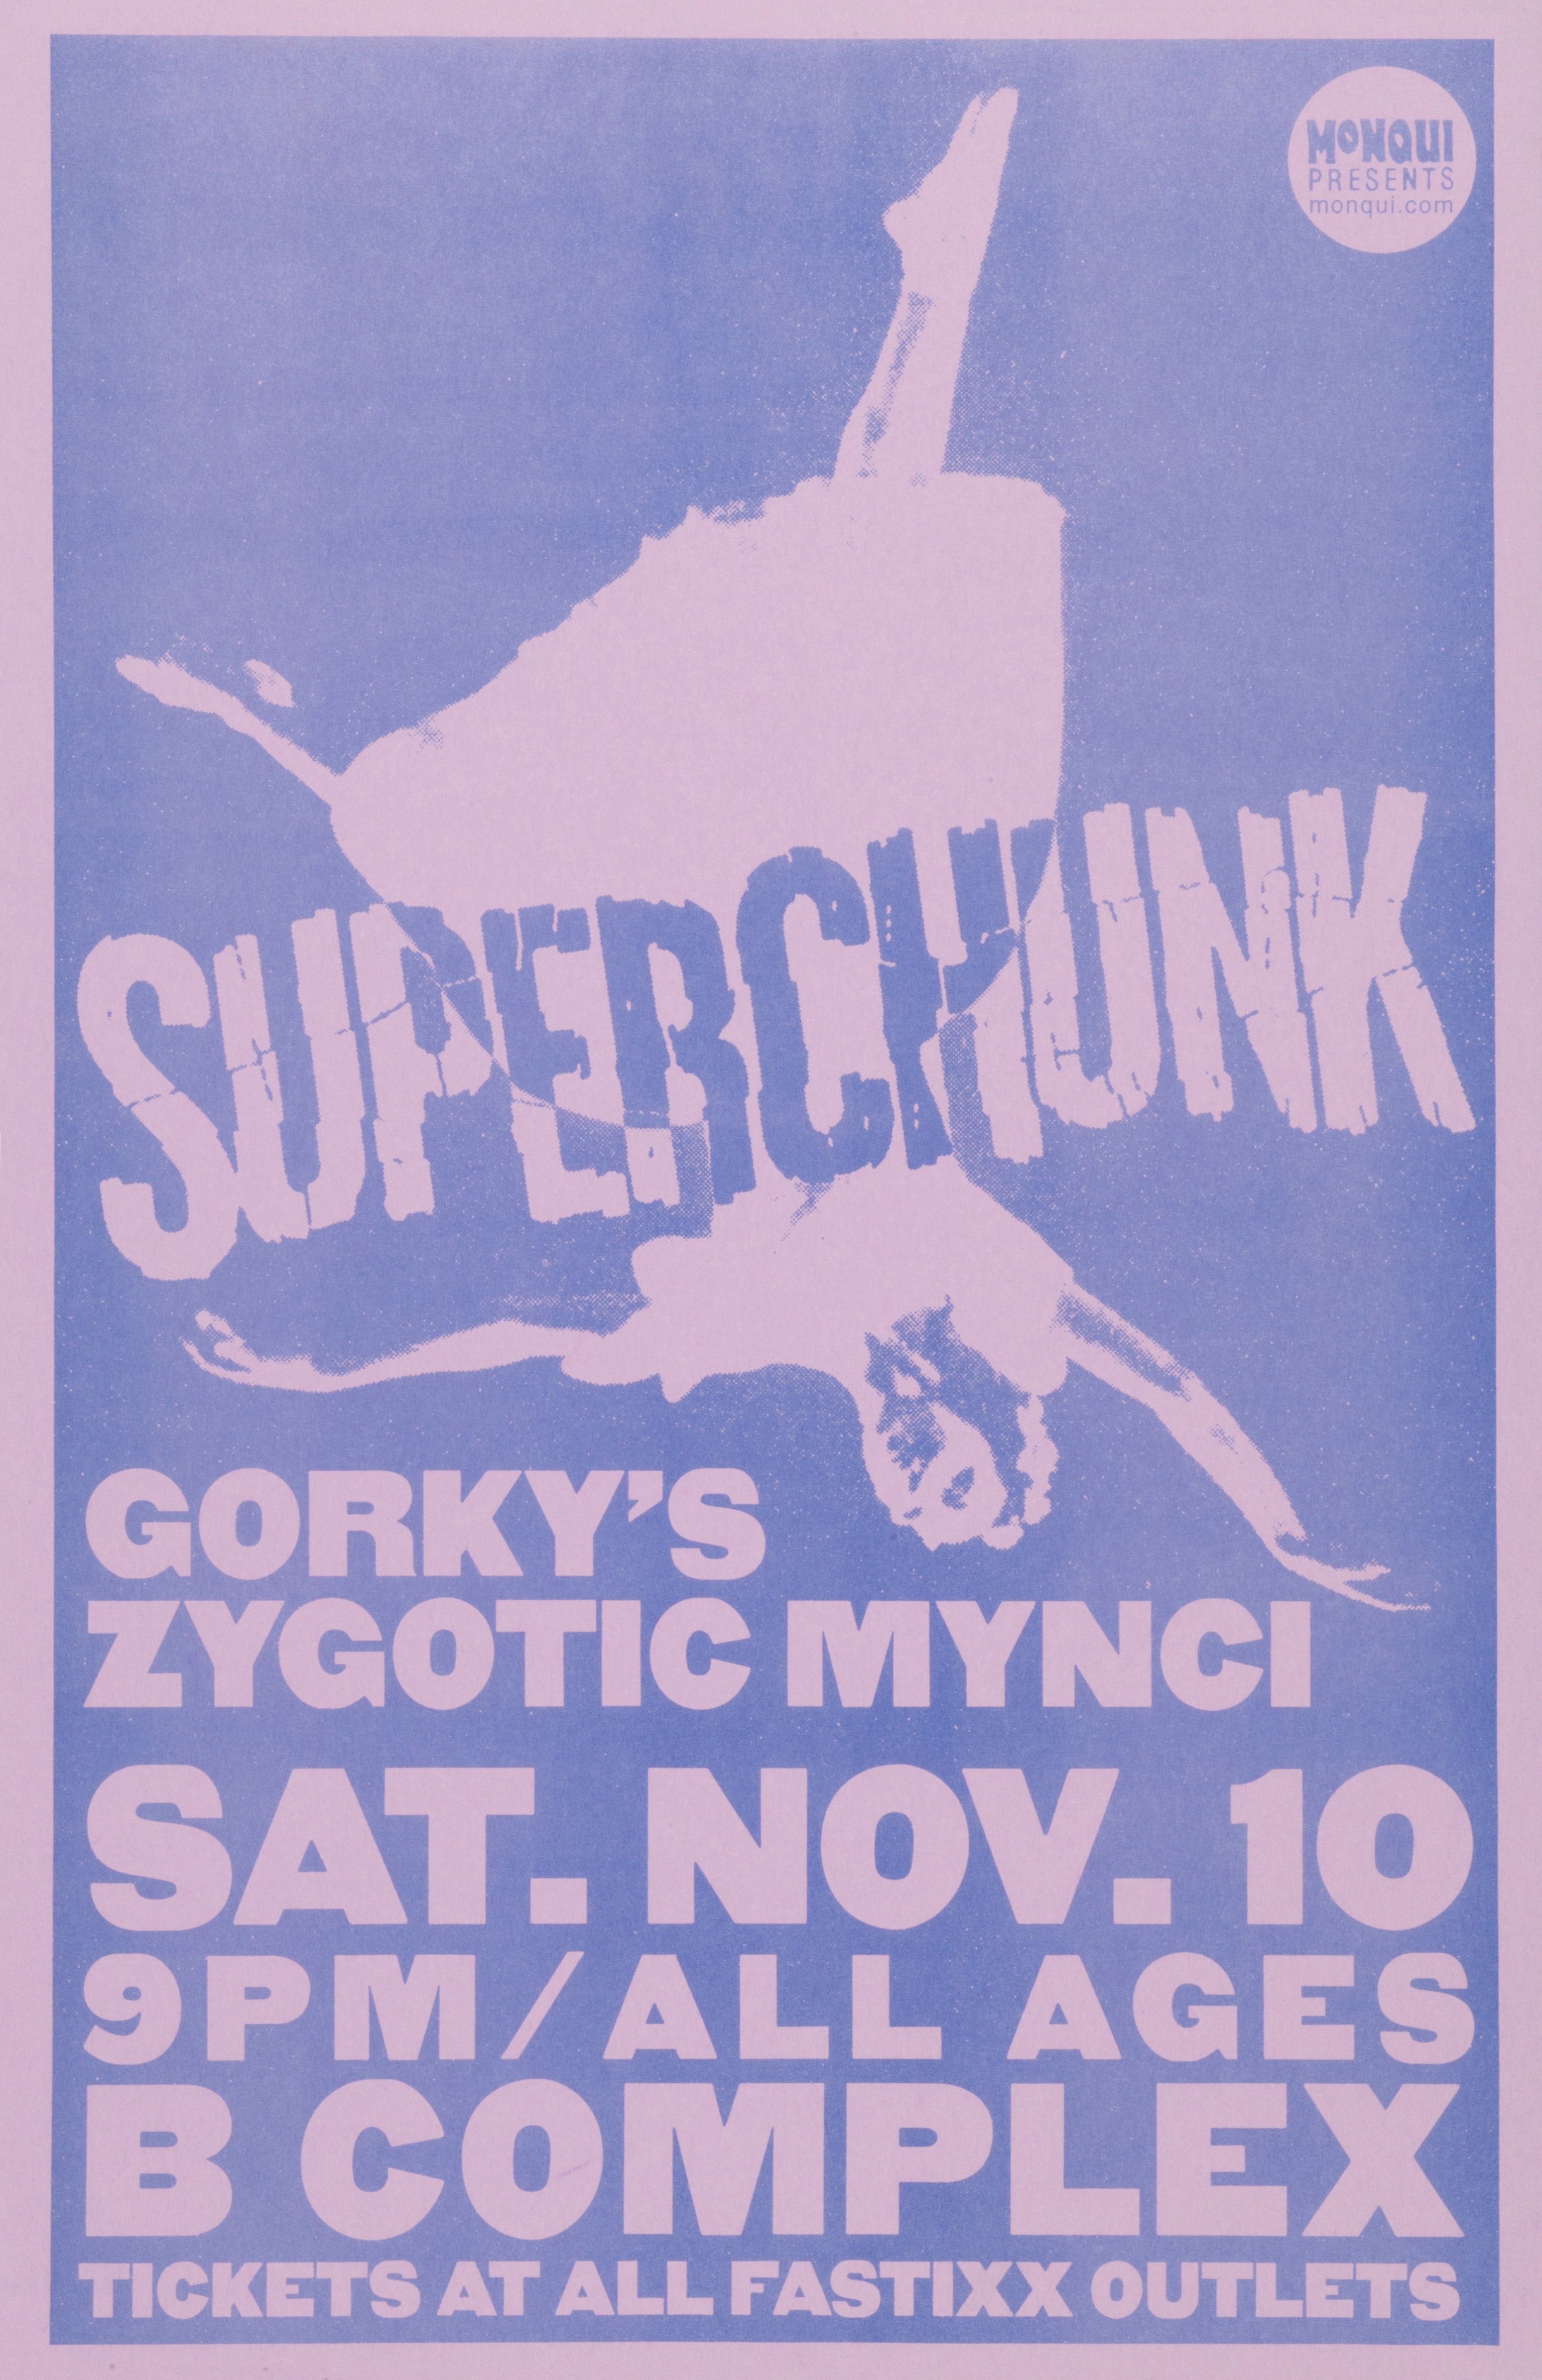 MXP-271.4 Superchunk B Complex 2001 Concert Poster